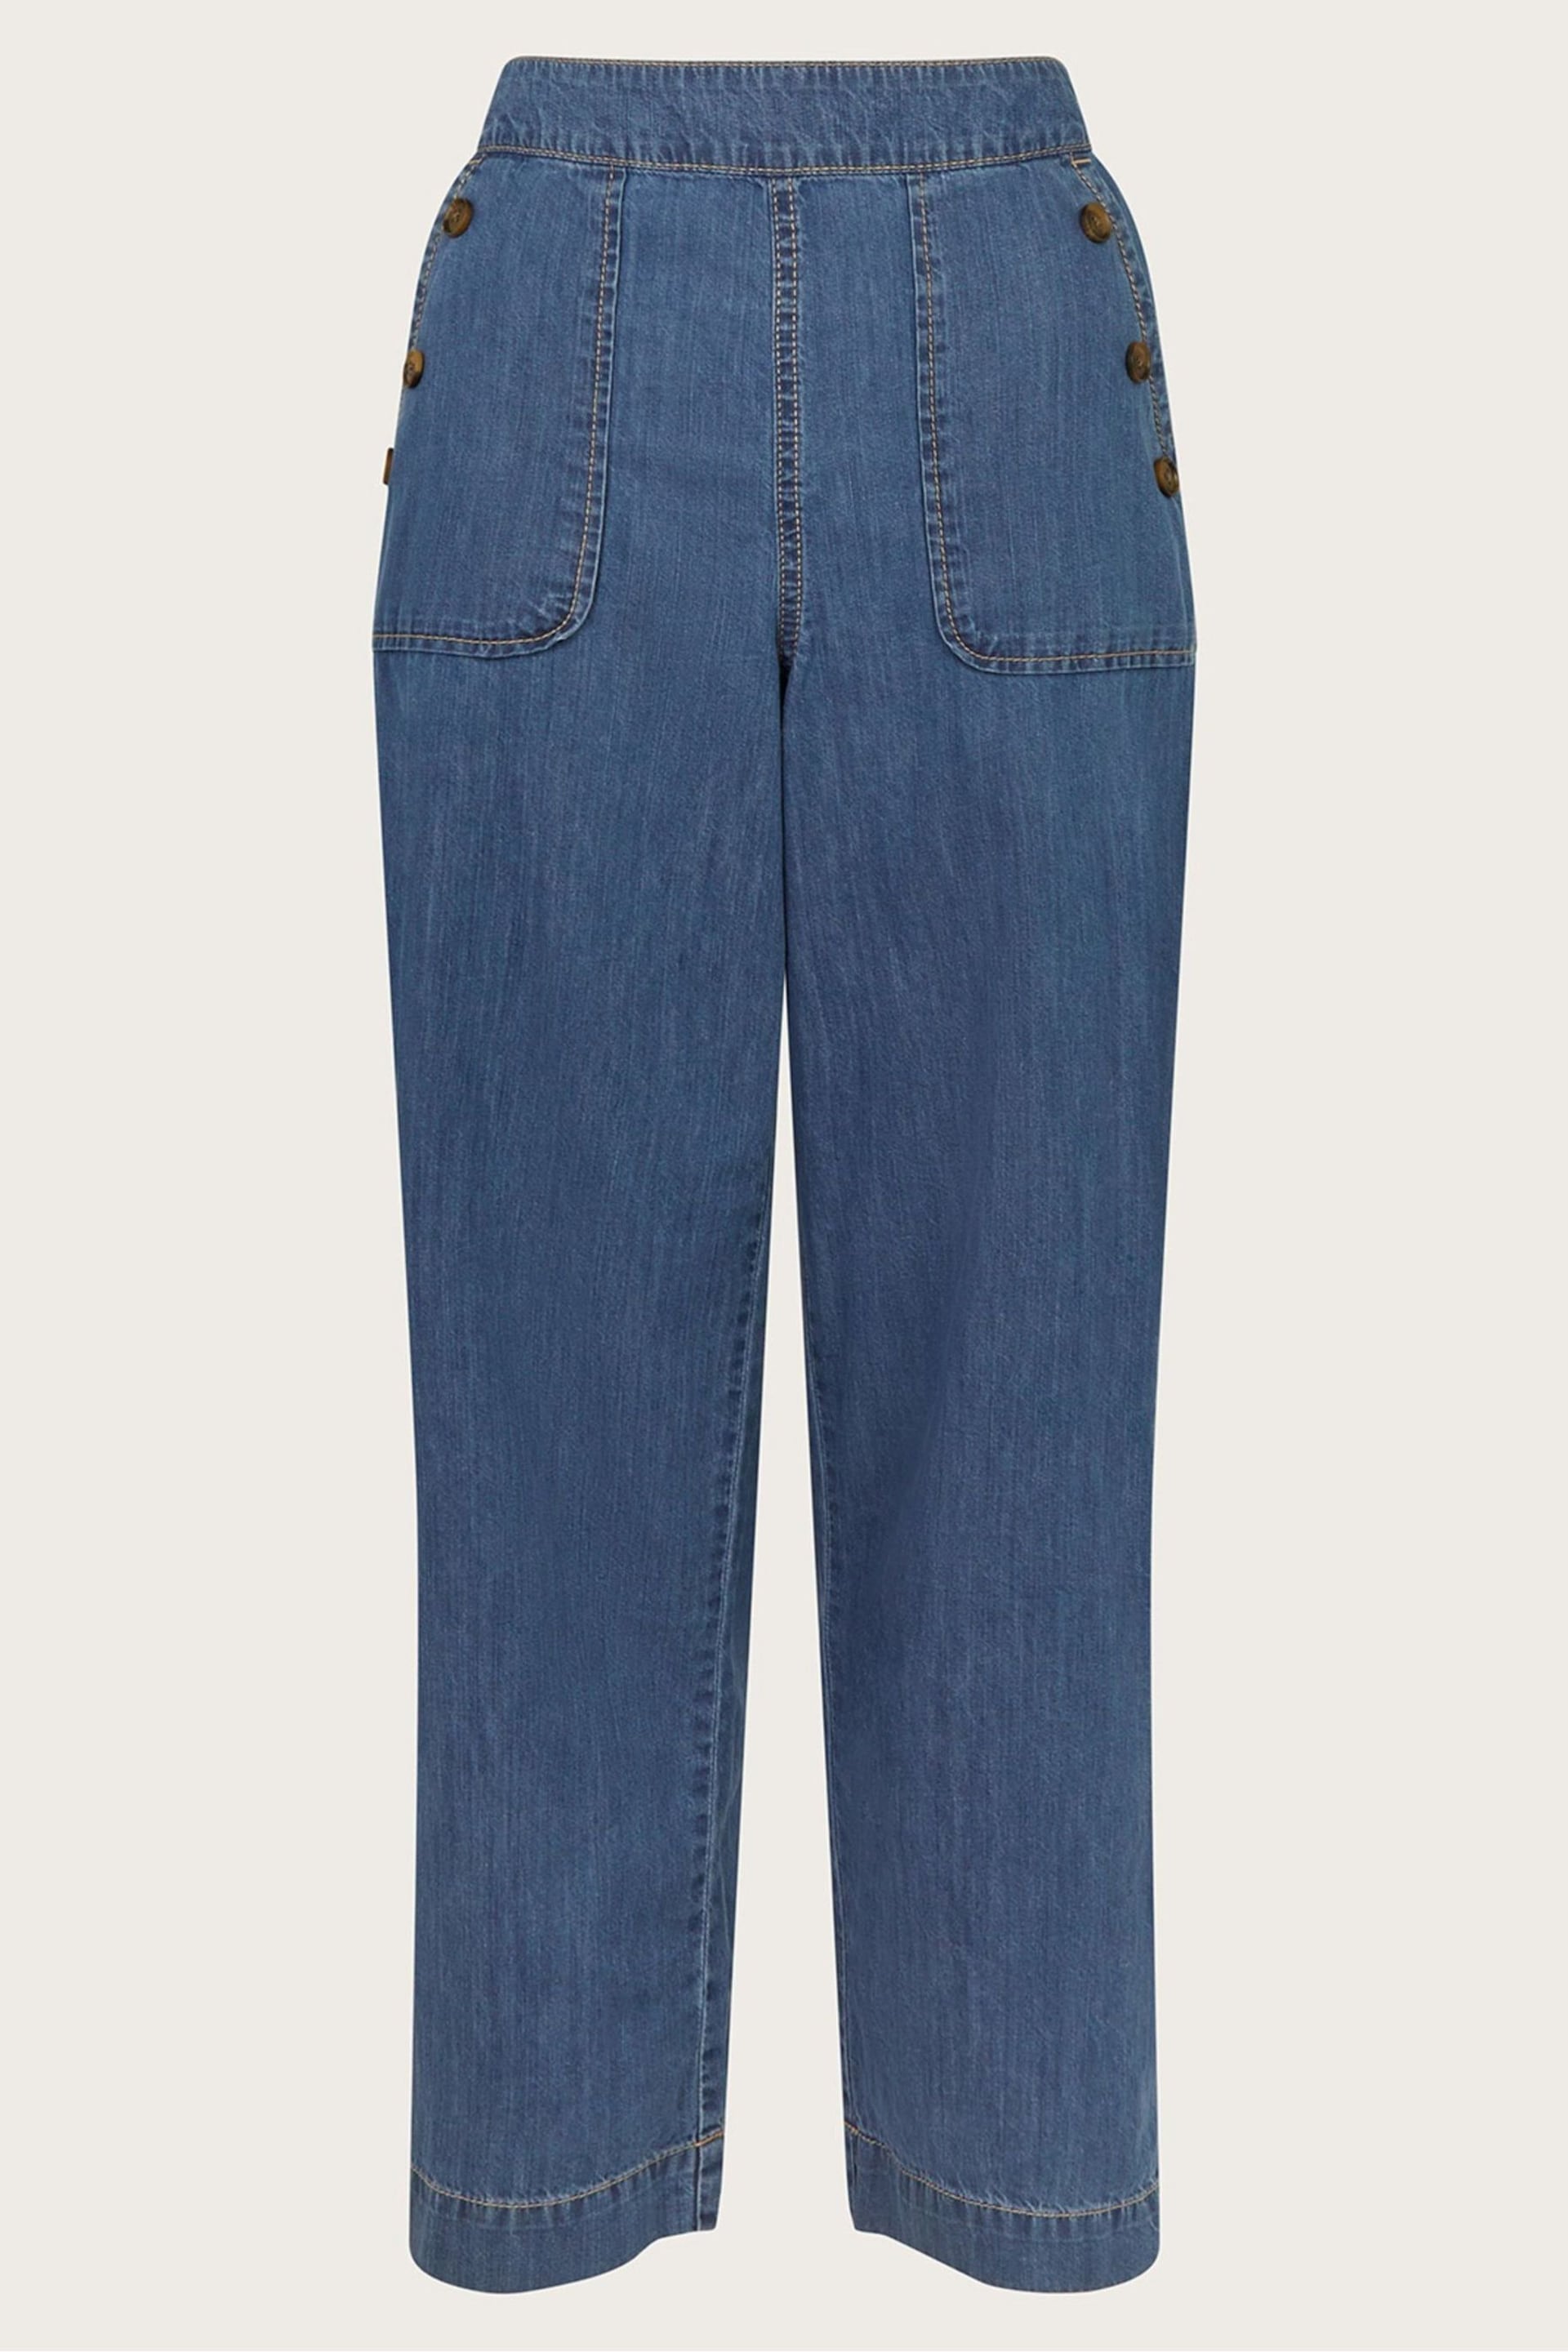 Monsoon Blue Harper Regular Length Crop Jeans - Image 5 of 5